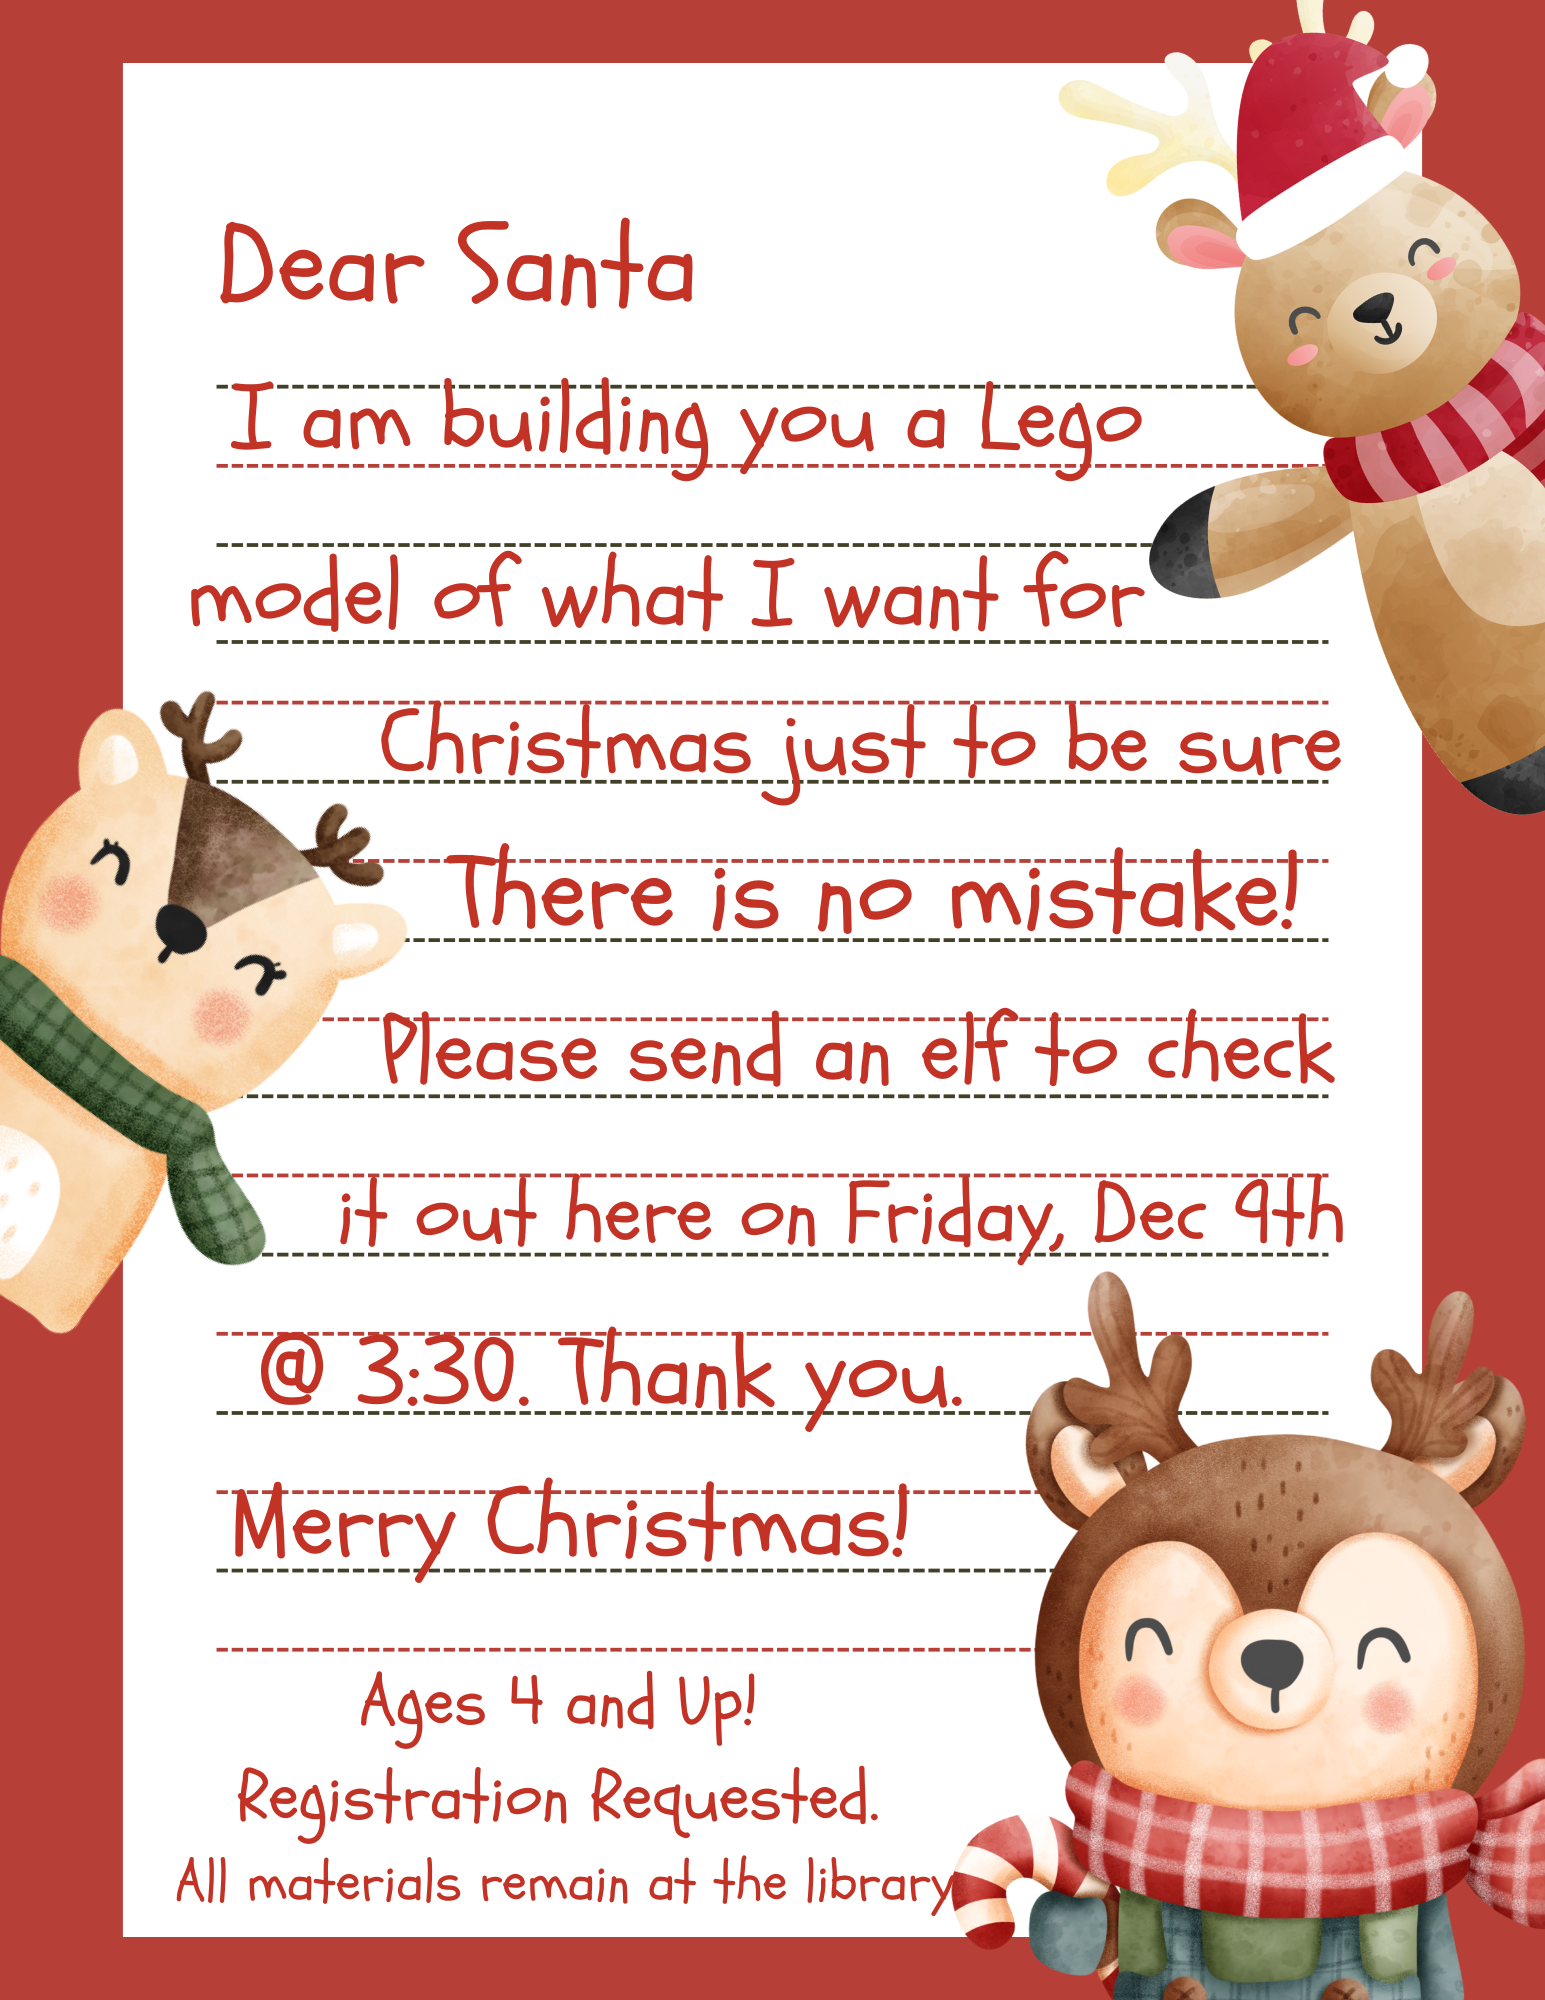 Lego: My Christmas Wish!